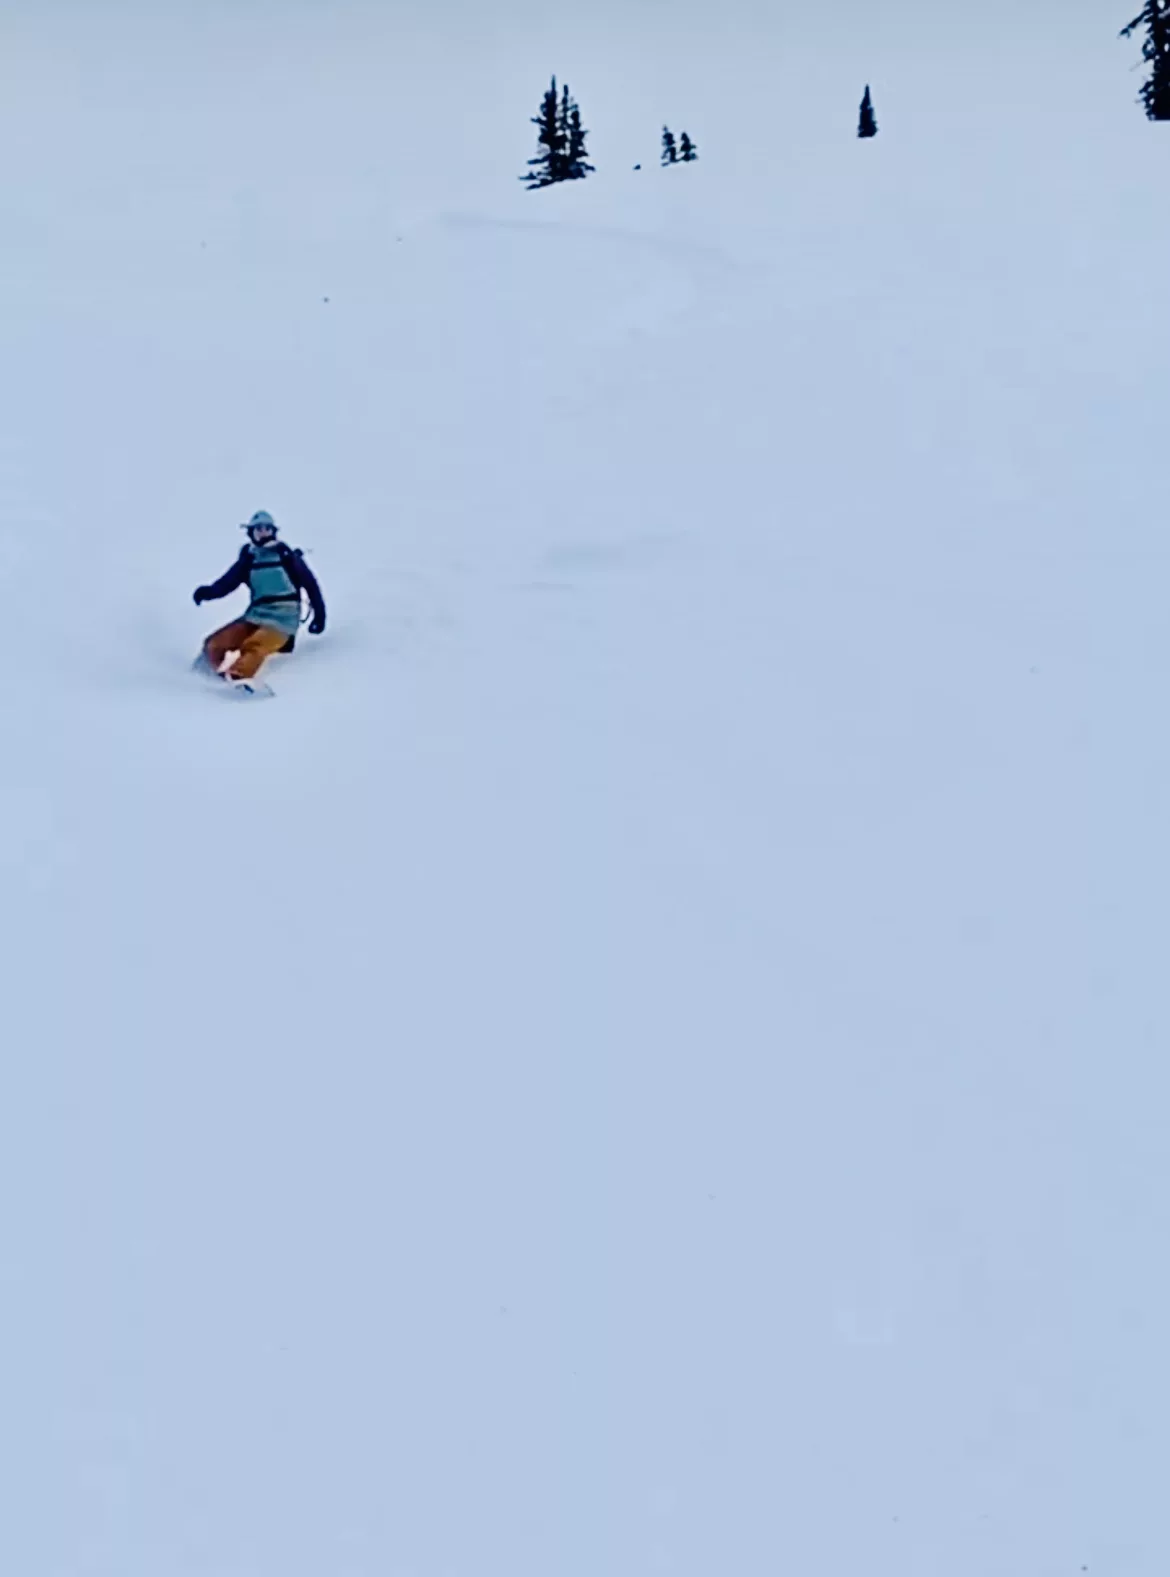 maya davis proteus snowboards